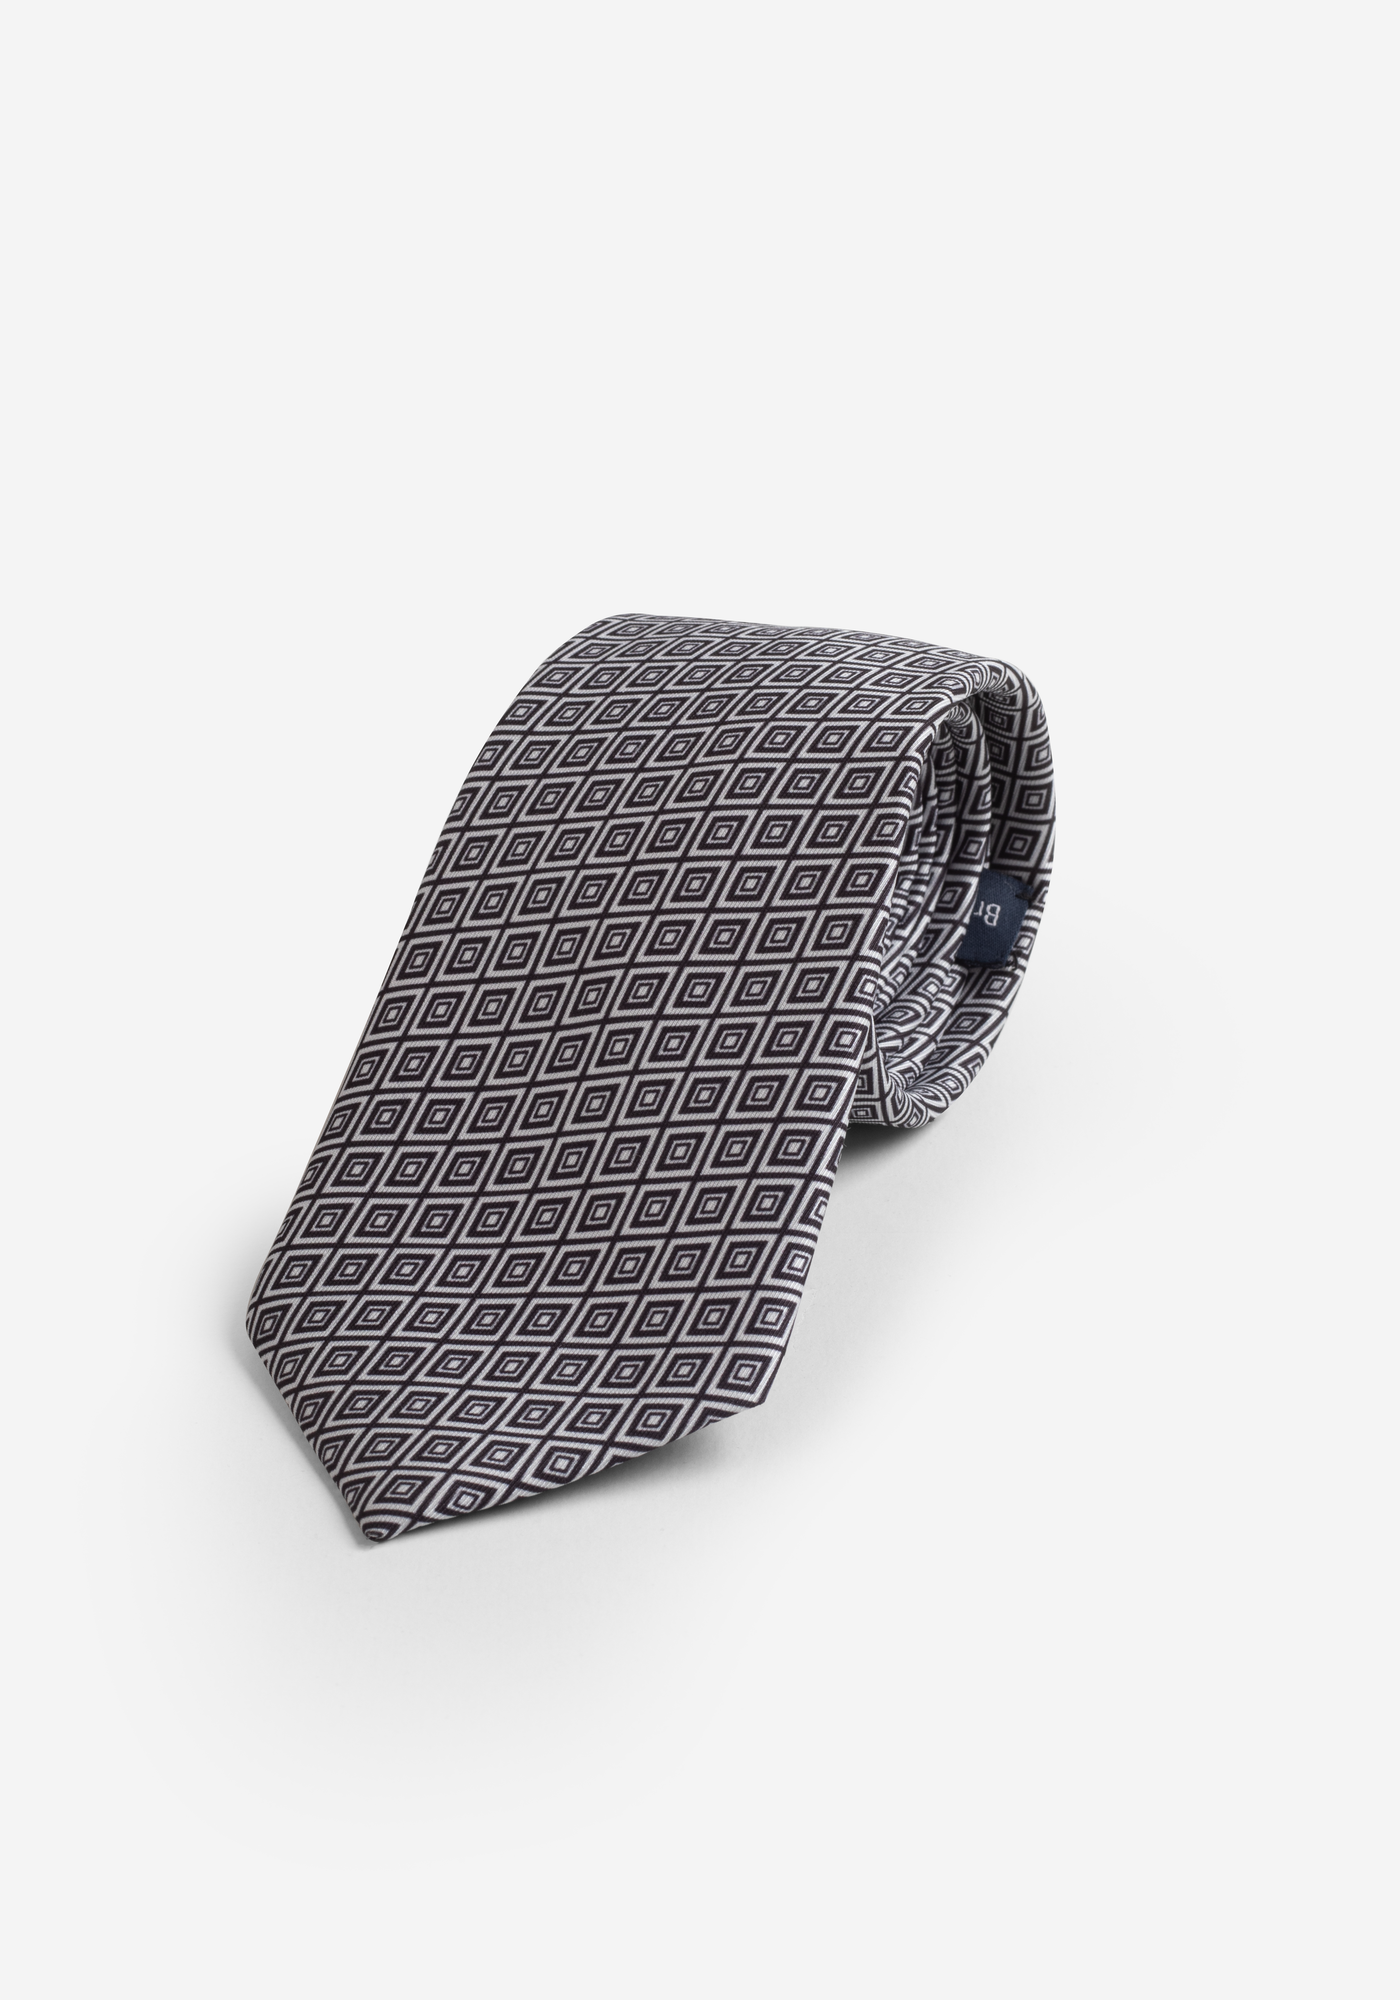 True Black White Micro Fiber Tie